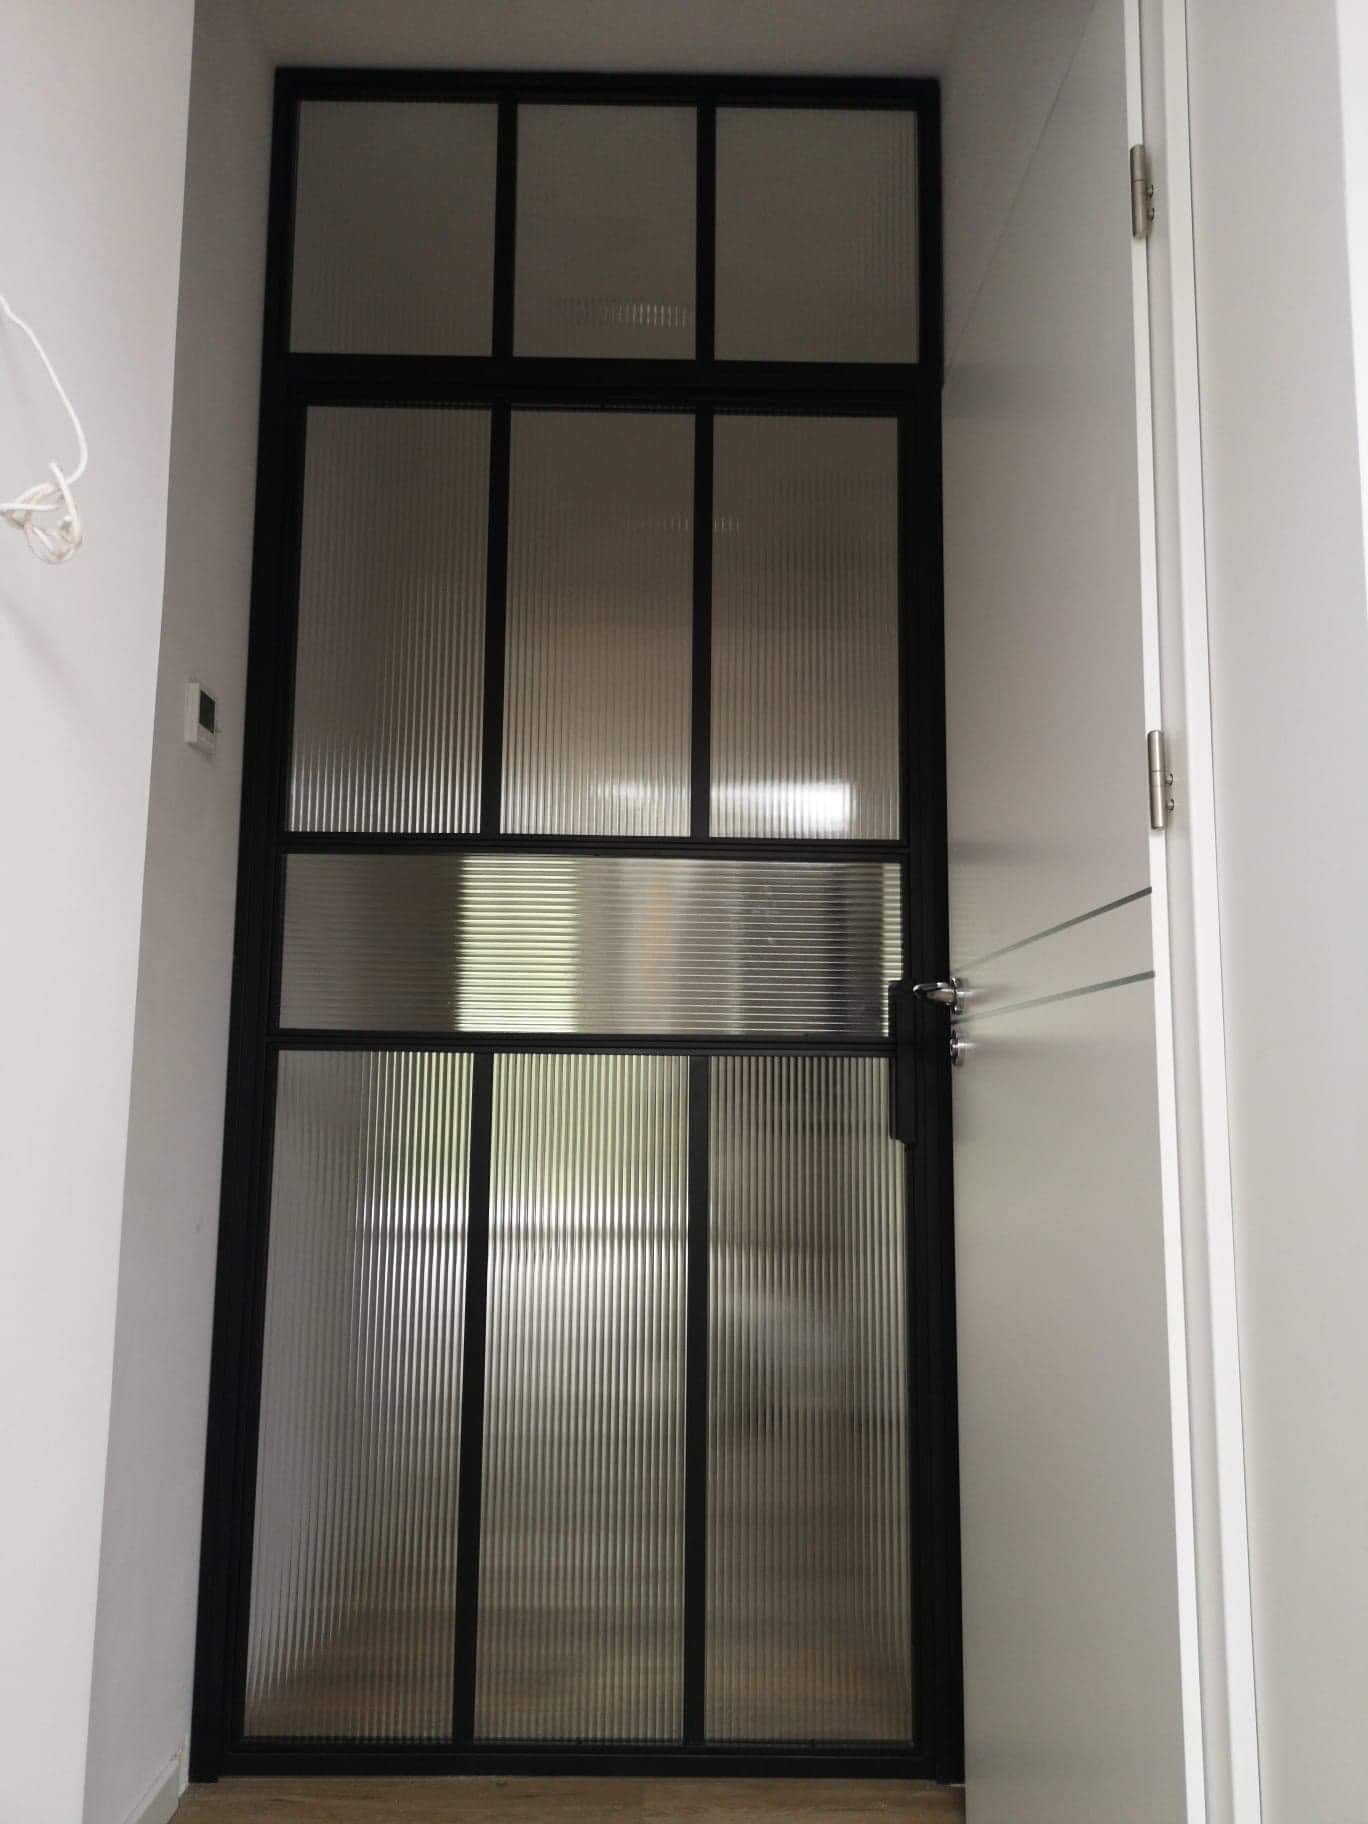 Ścianka przeszklona indsutrialna ściana szklana metalowa z drzwiami uchylnymi drzwi  LOFT Loftowe Ewa K.